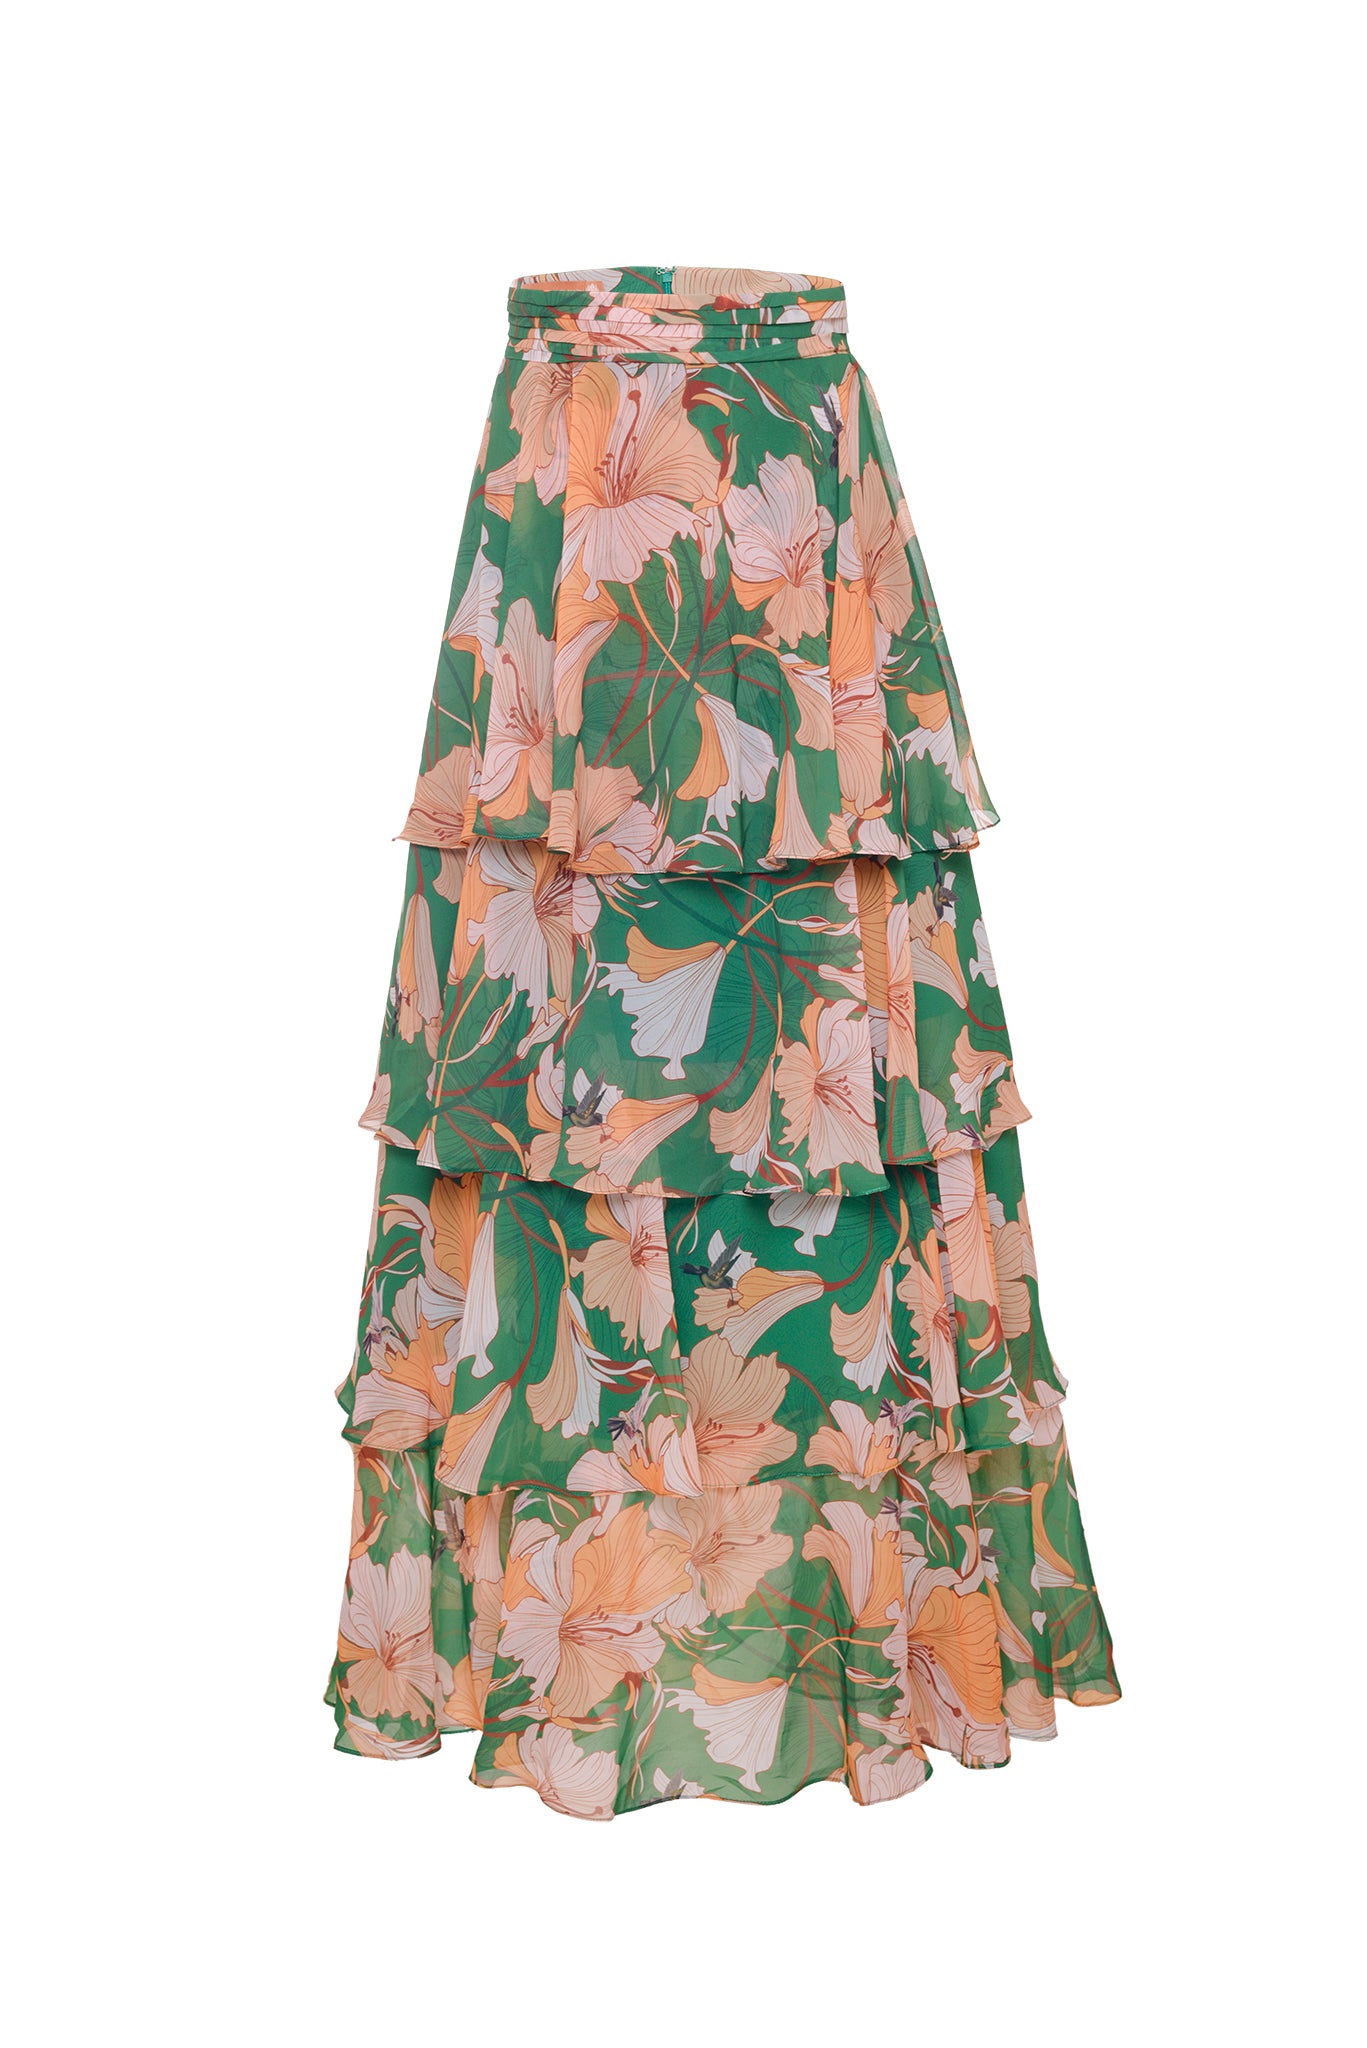 Gaviota Skirt Green Tangerine - MADE TO ORDER